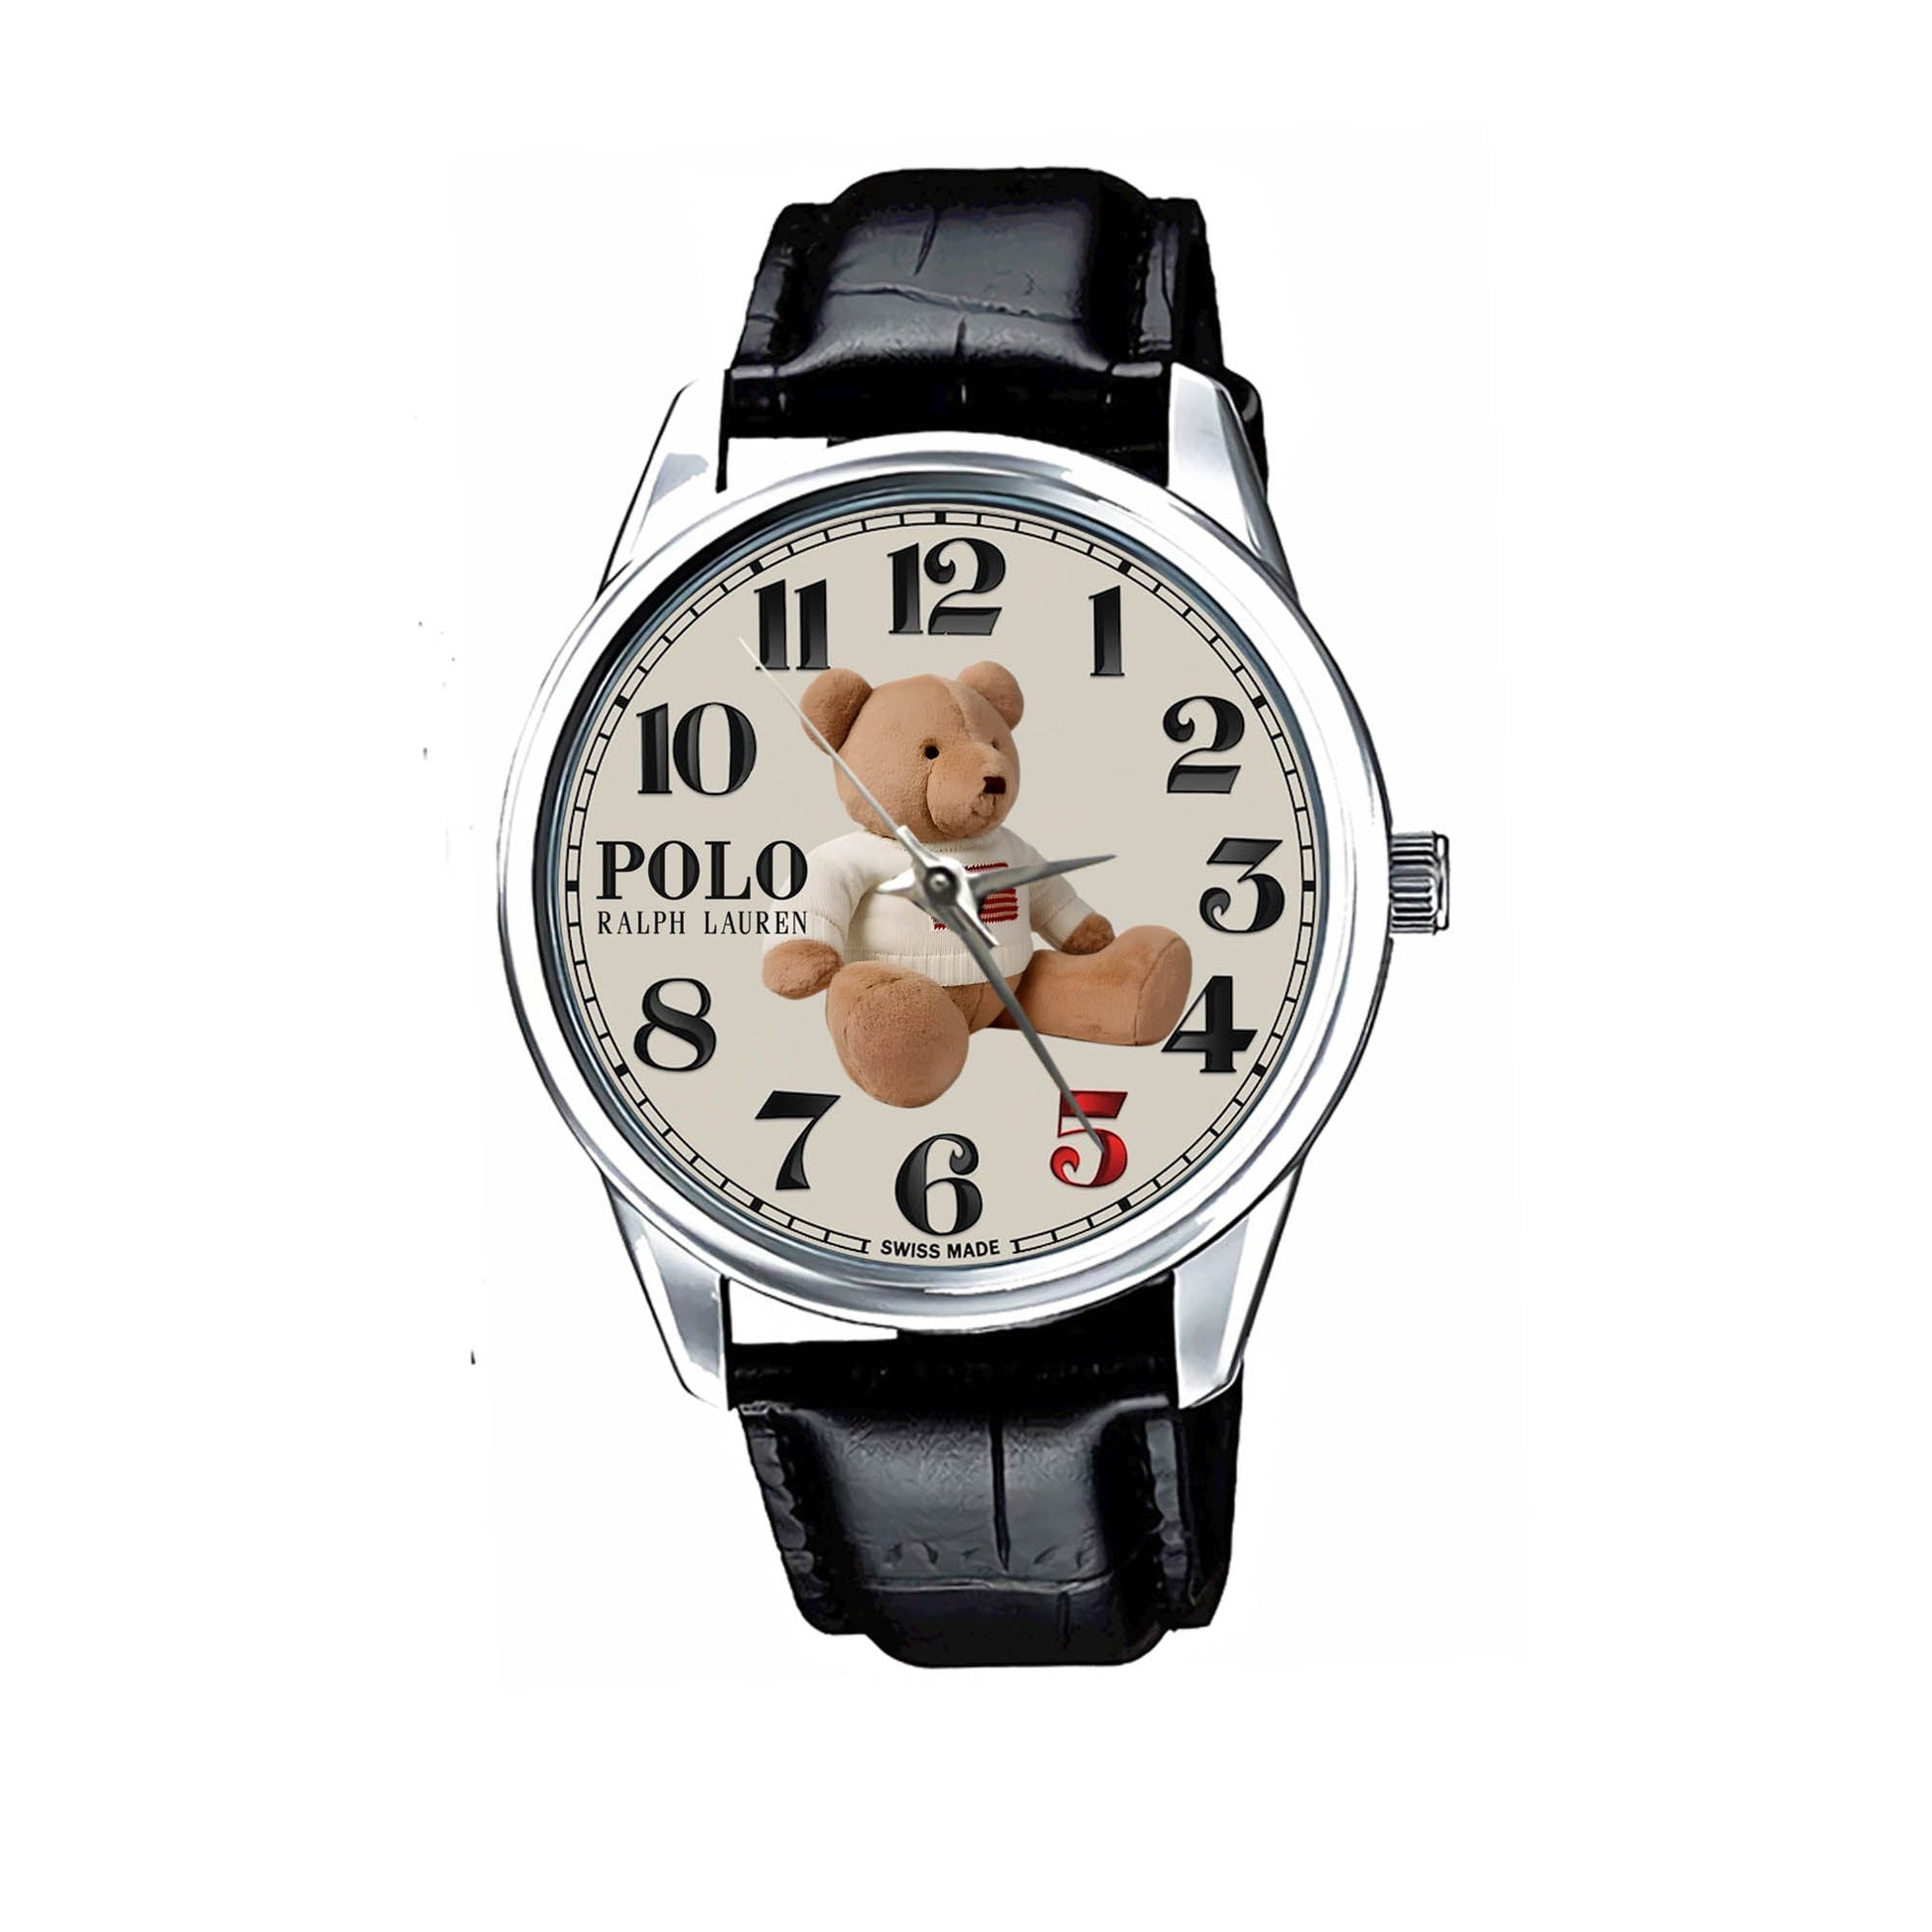 Polo Bear Ralph Lauren Watch KP791